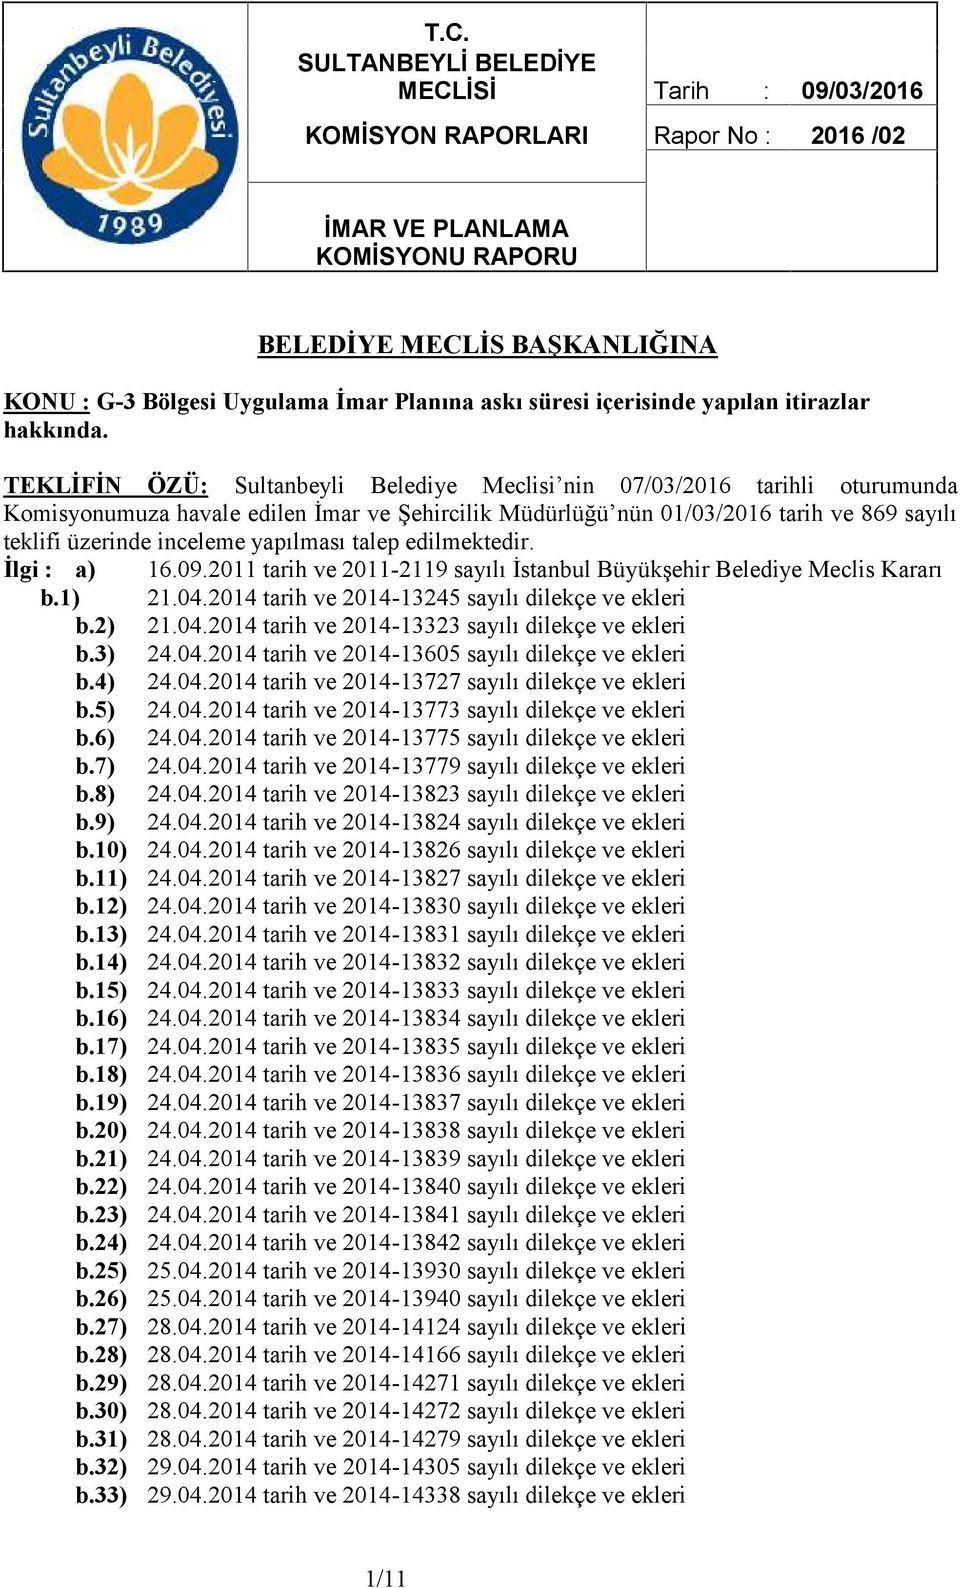 TEKLİFİN ÖZÜ: Sultanbeyli Belediye Meclisi nin 07/03/2016 tarihli oturumunda Komisyonumuza havale edilen İmar ve Şehircilik Müdürlüğü nün 01/03/2016 tarih ve 869 sayılı teklifi üzerinde inceleme